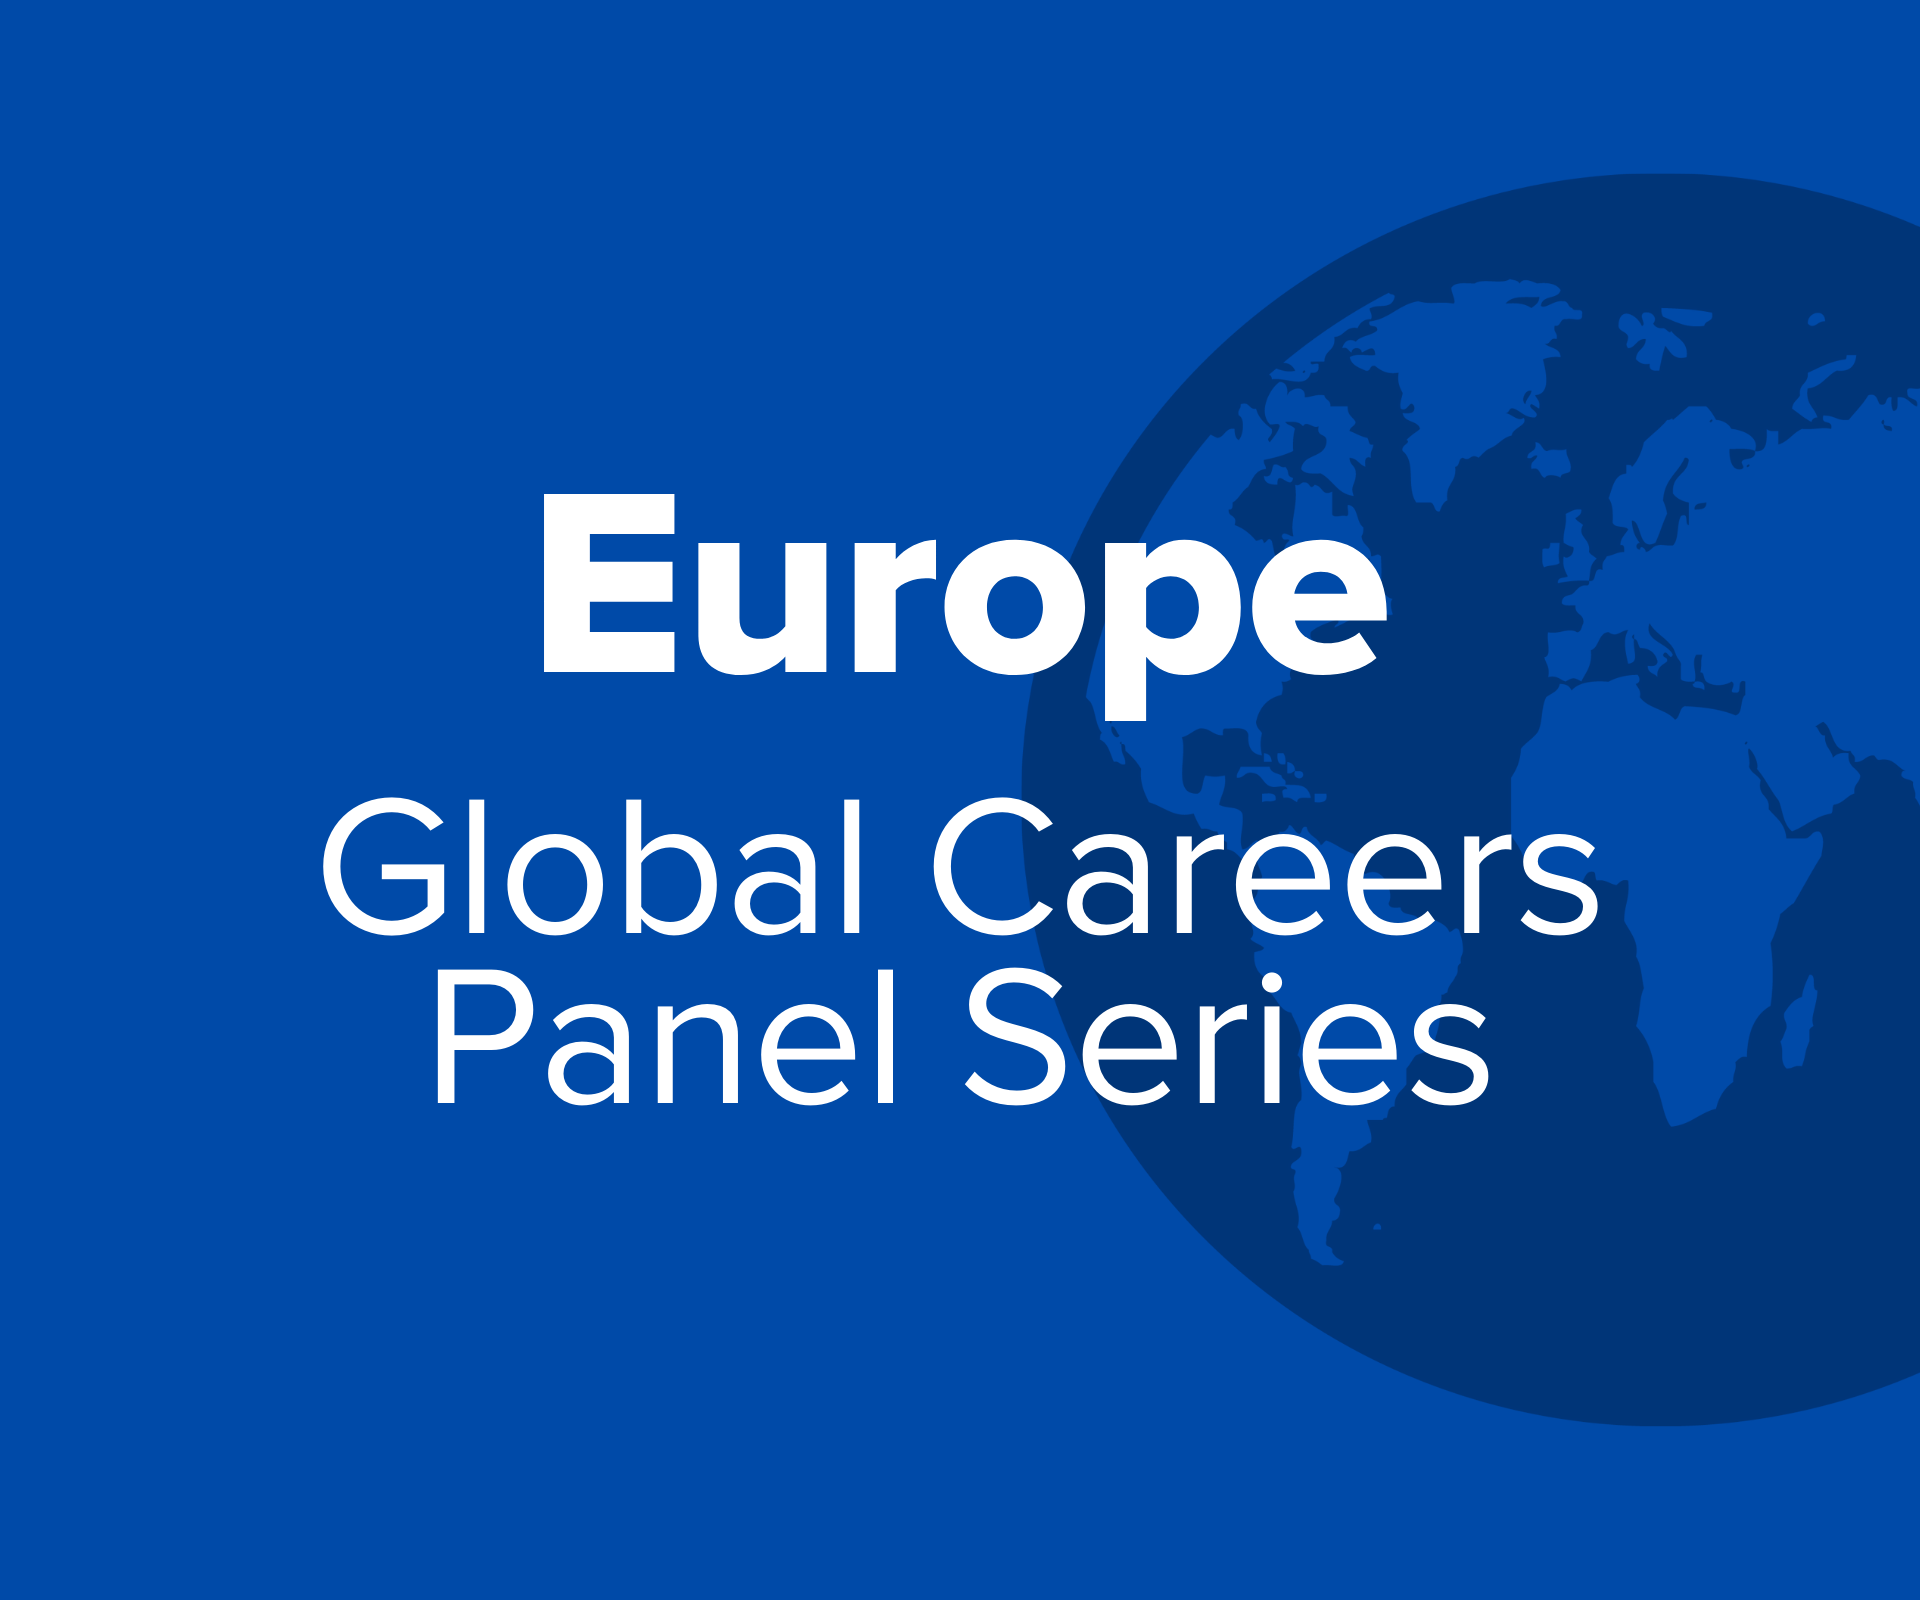 Europe Global Careers Panel Series